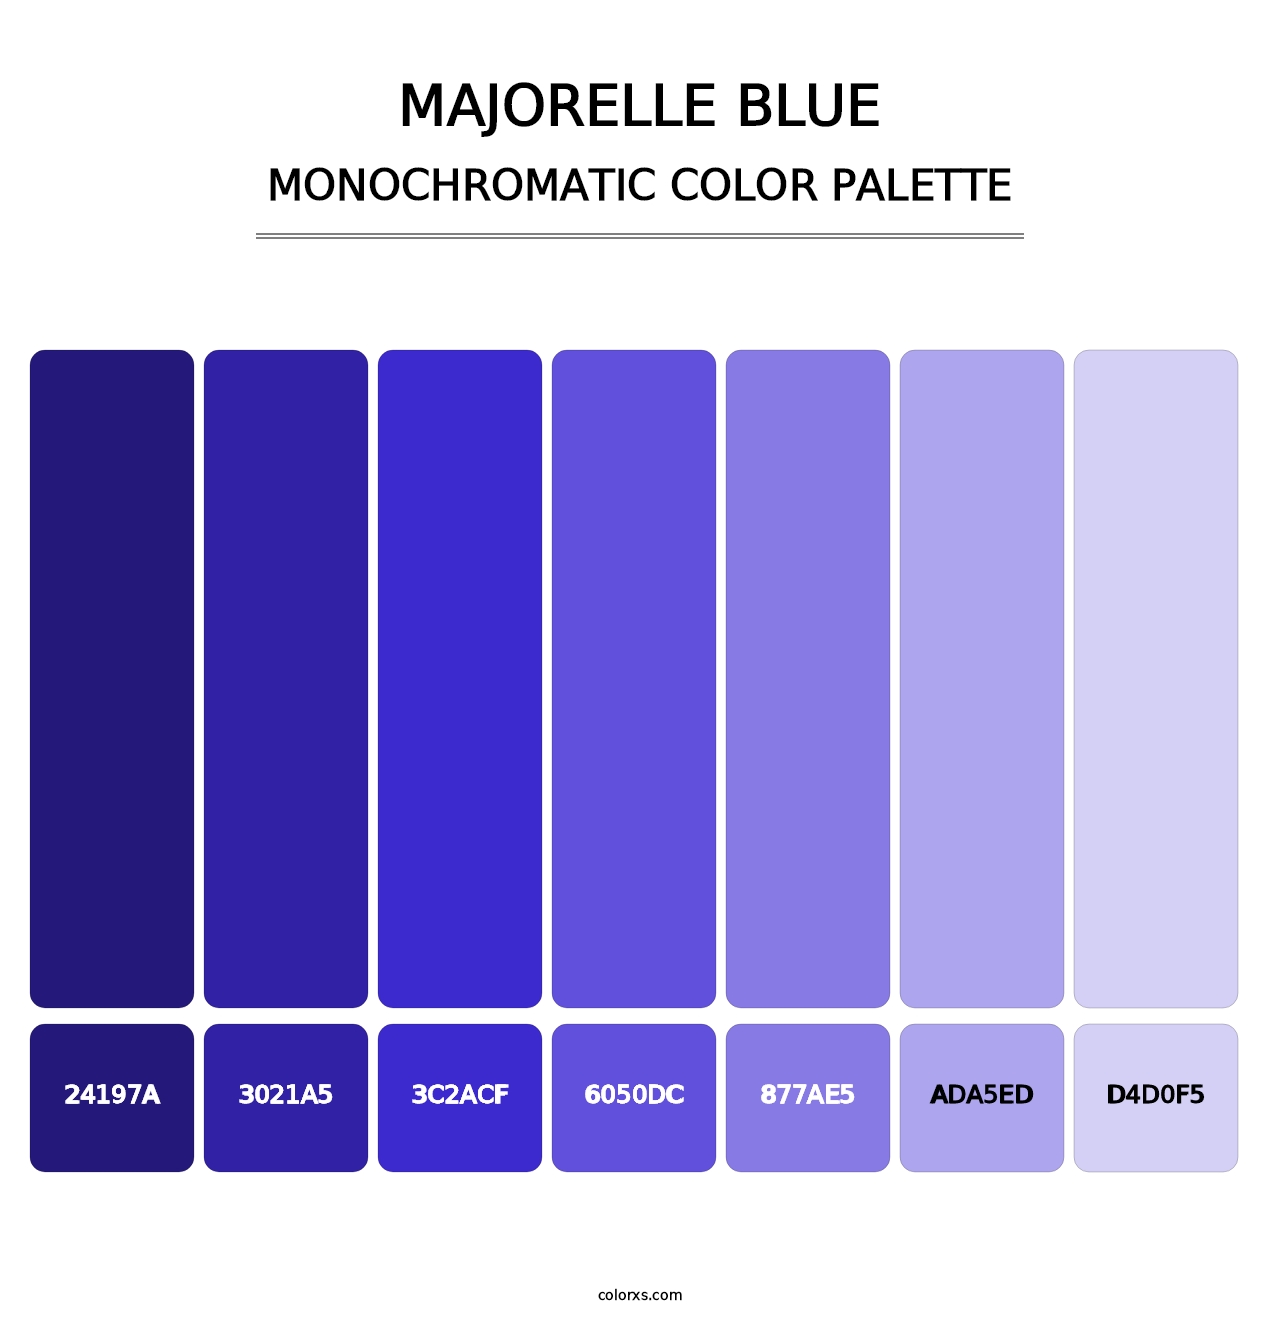 Majorelle Blue - Monochromatic Color Palette